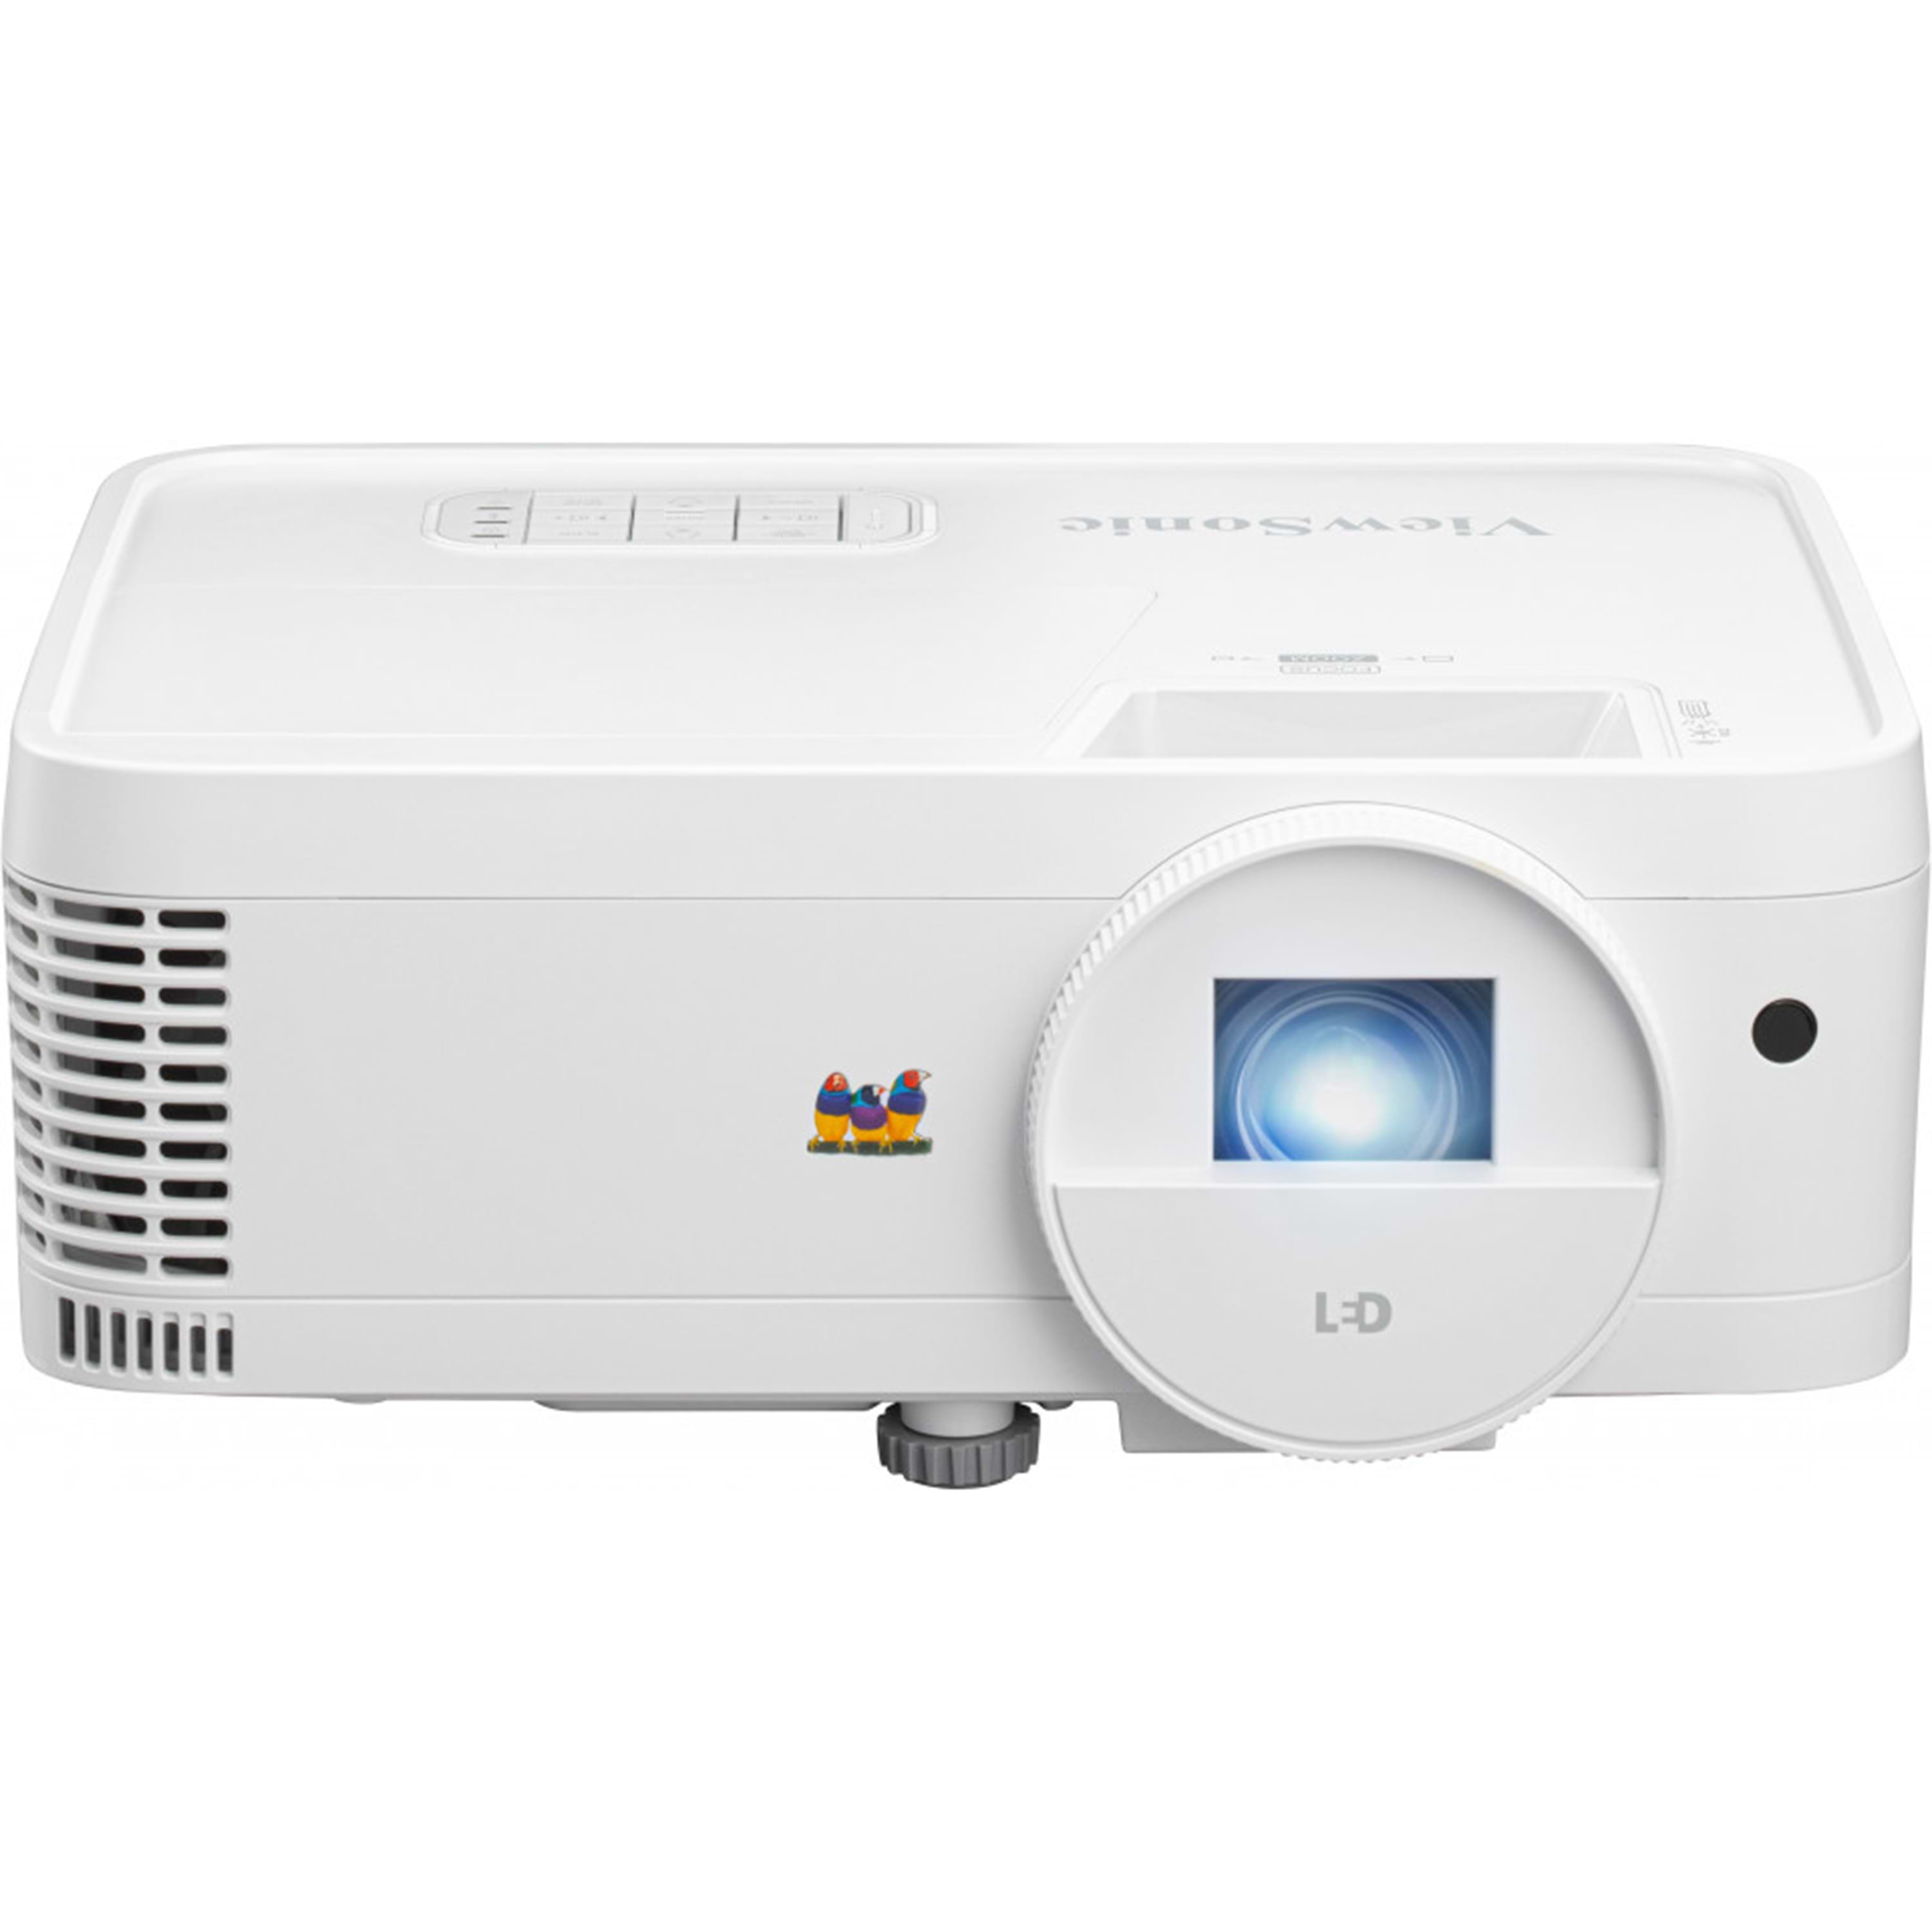 מקרן וידאו ViewSonic LS500WH 2000 ANSI Lumens WXGA LED - צבע לבן שלוש שנות אחריות ע